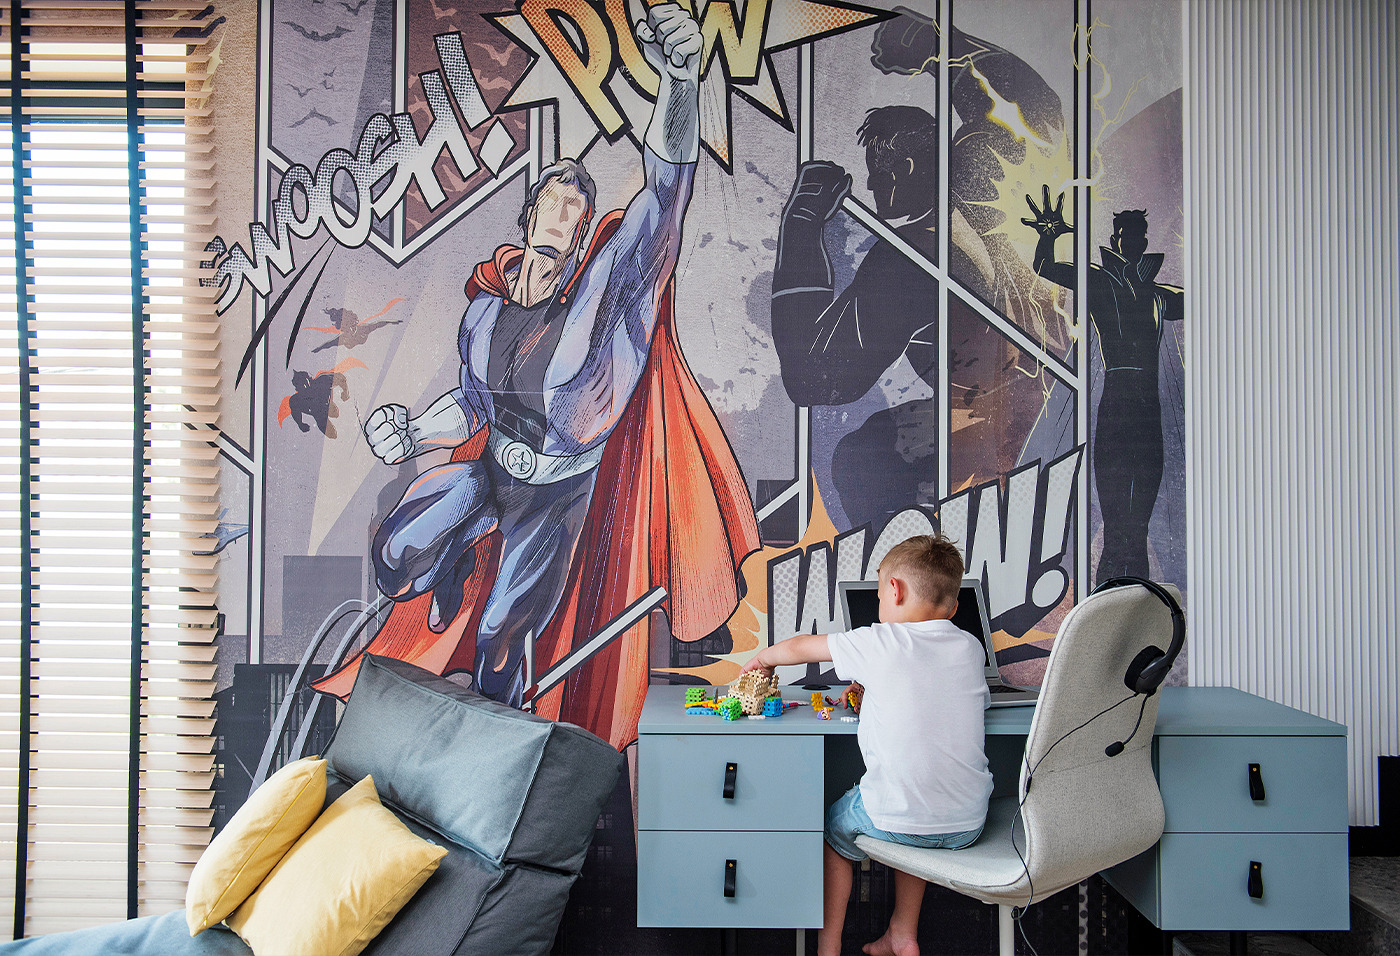 Tapeta z superbohaterami - doskonały wybór dla młodych fanów komiksów, dostępna w naszym sklepie